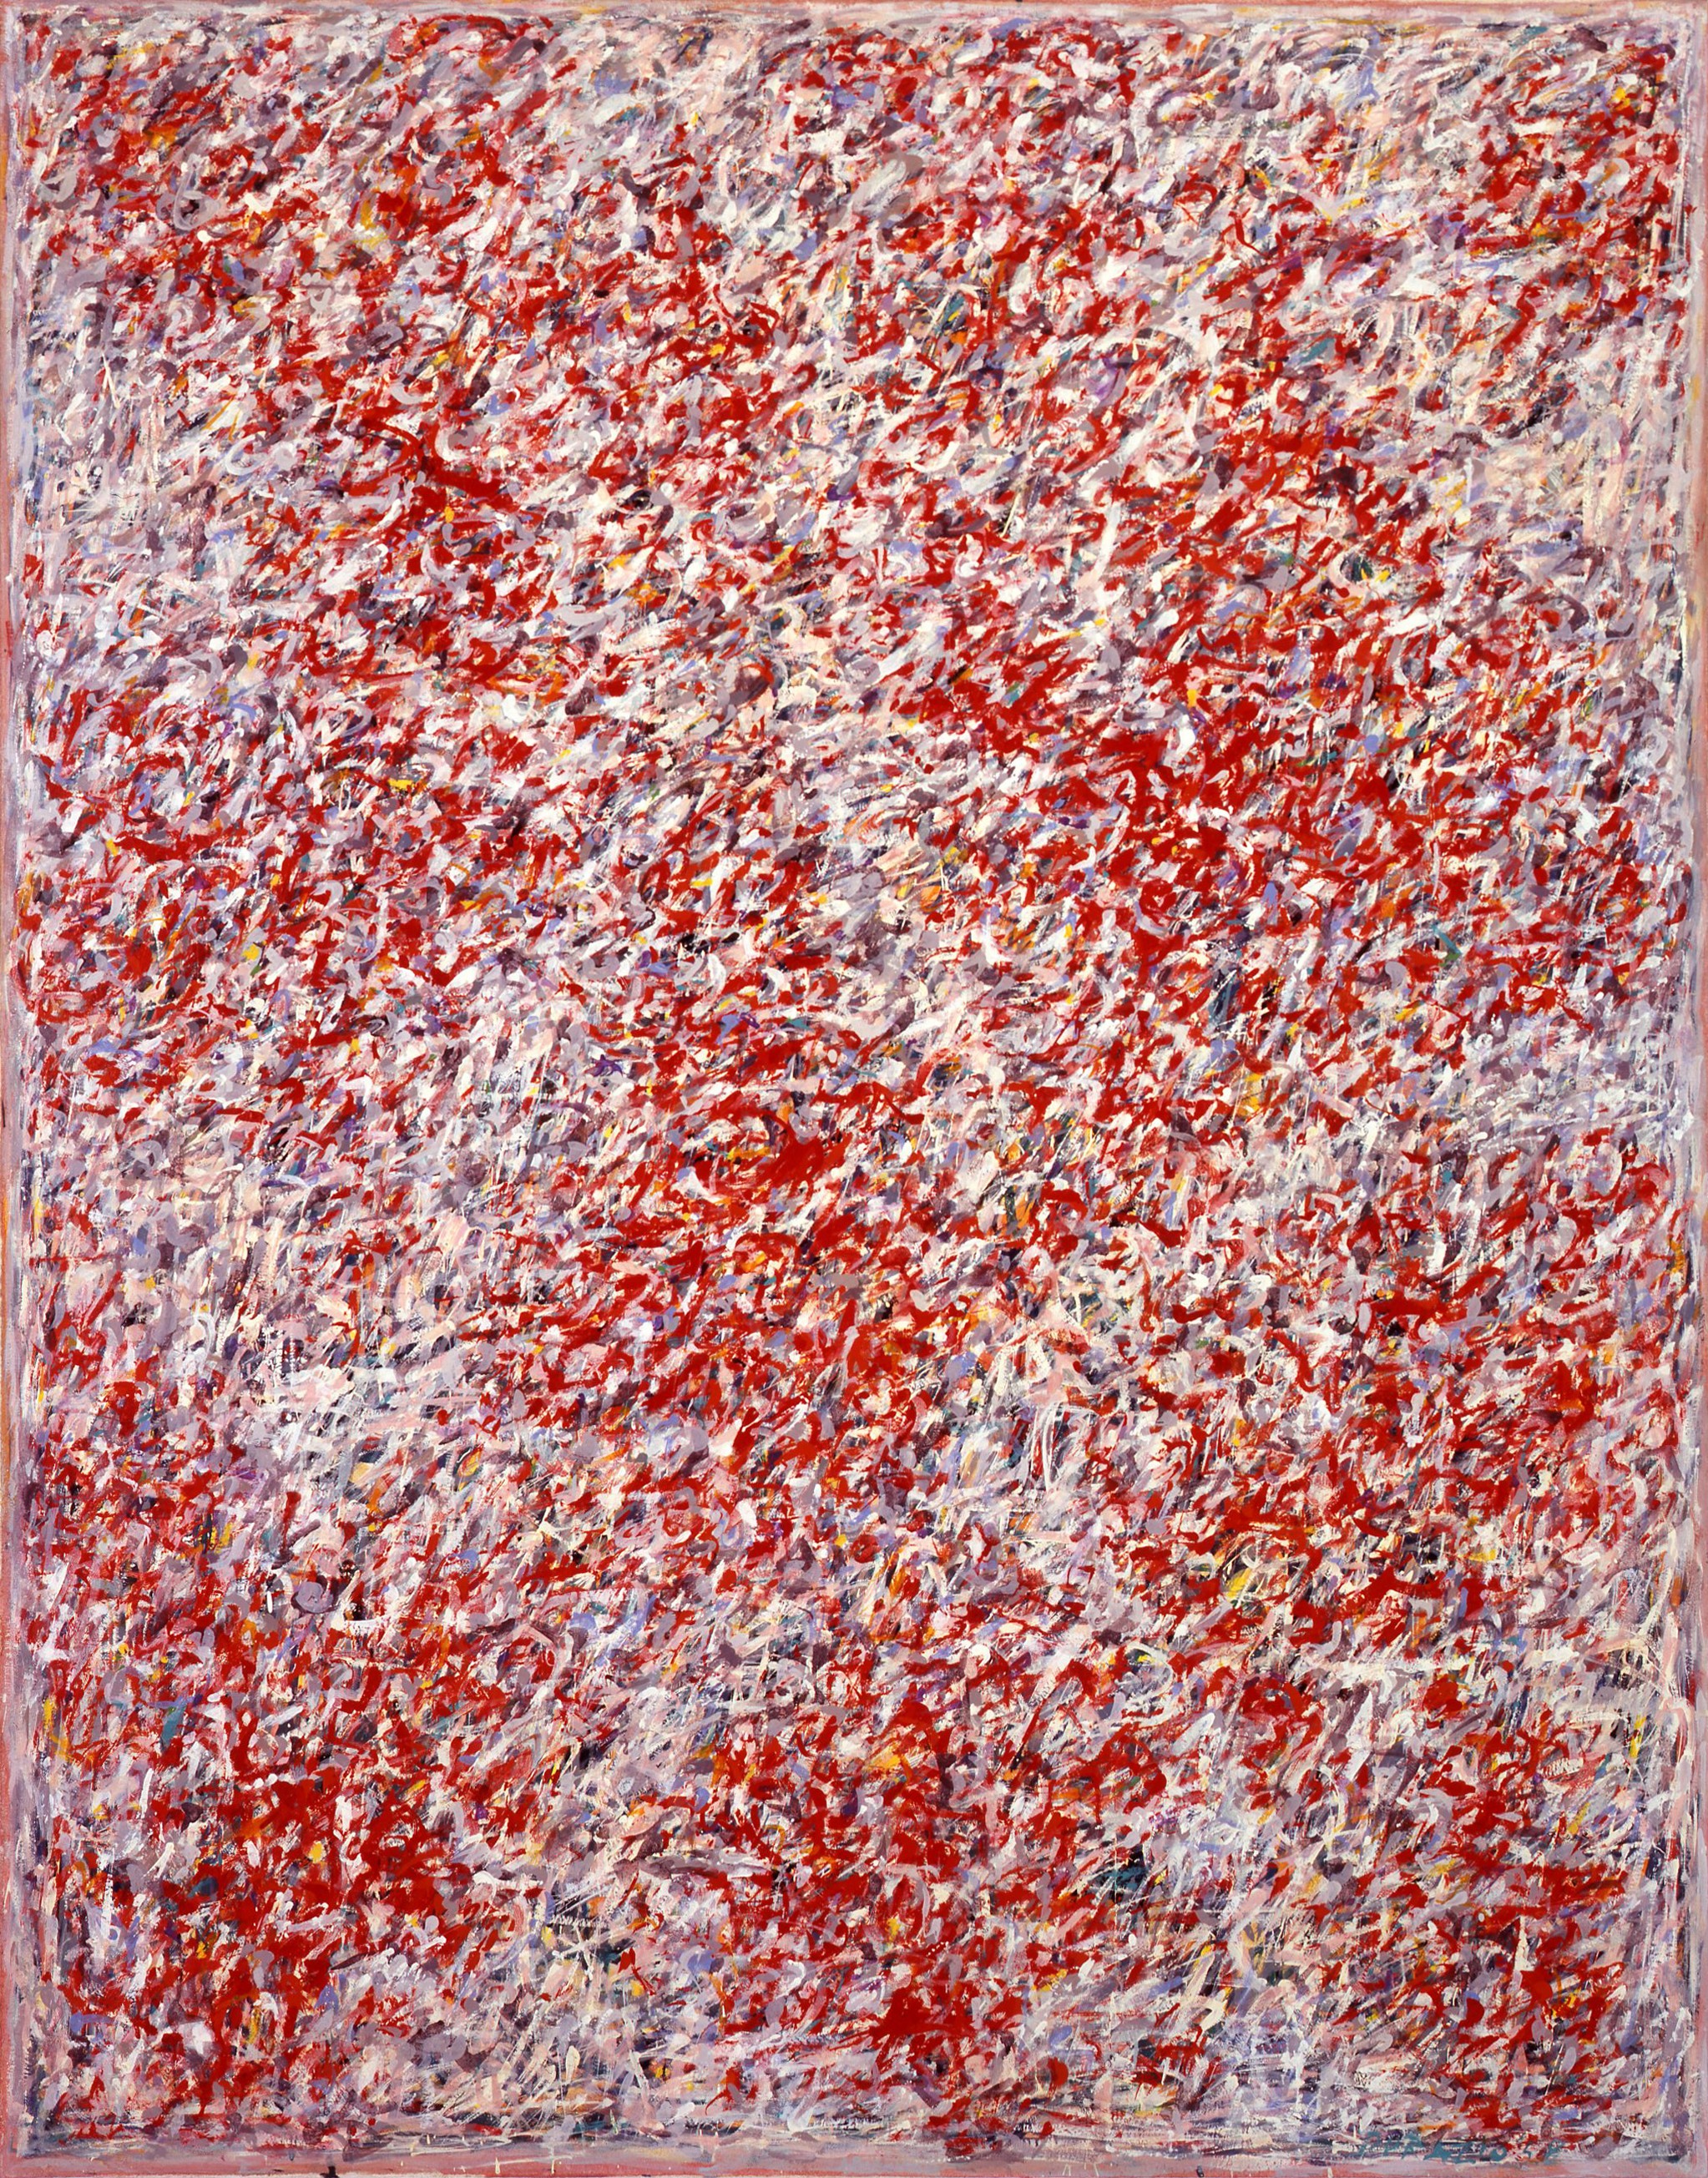 Piero Dorazio, Sospetto di forma, 1958. Painting, oil on canvas, 146.0 × 114.0 cm. Courtesy: Galleria dello Scudo